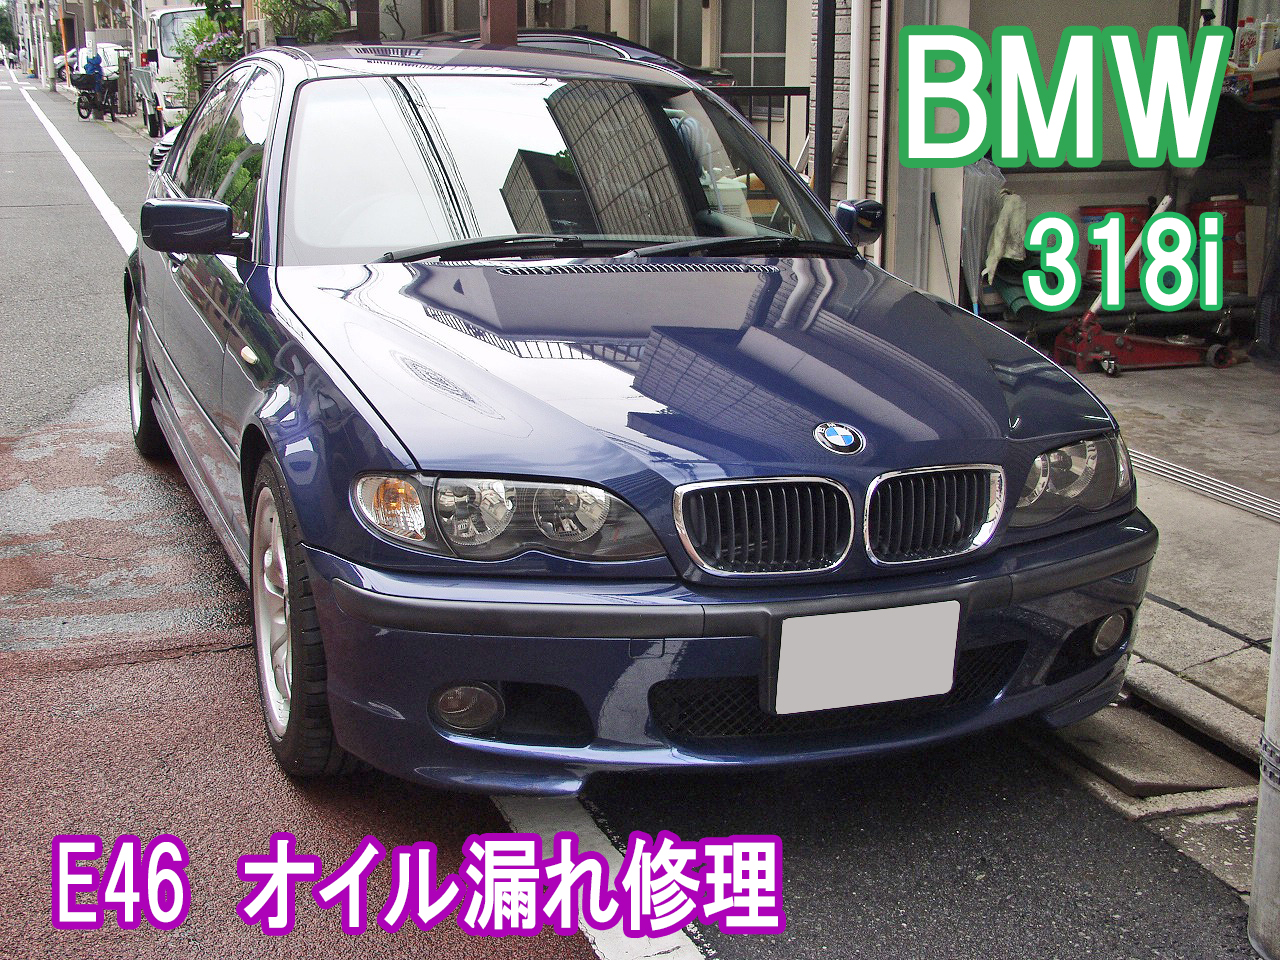 BMW E46 318iのオイル漏れ修理